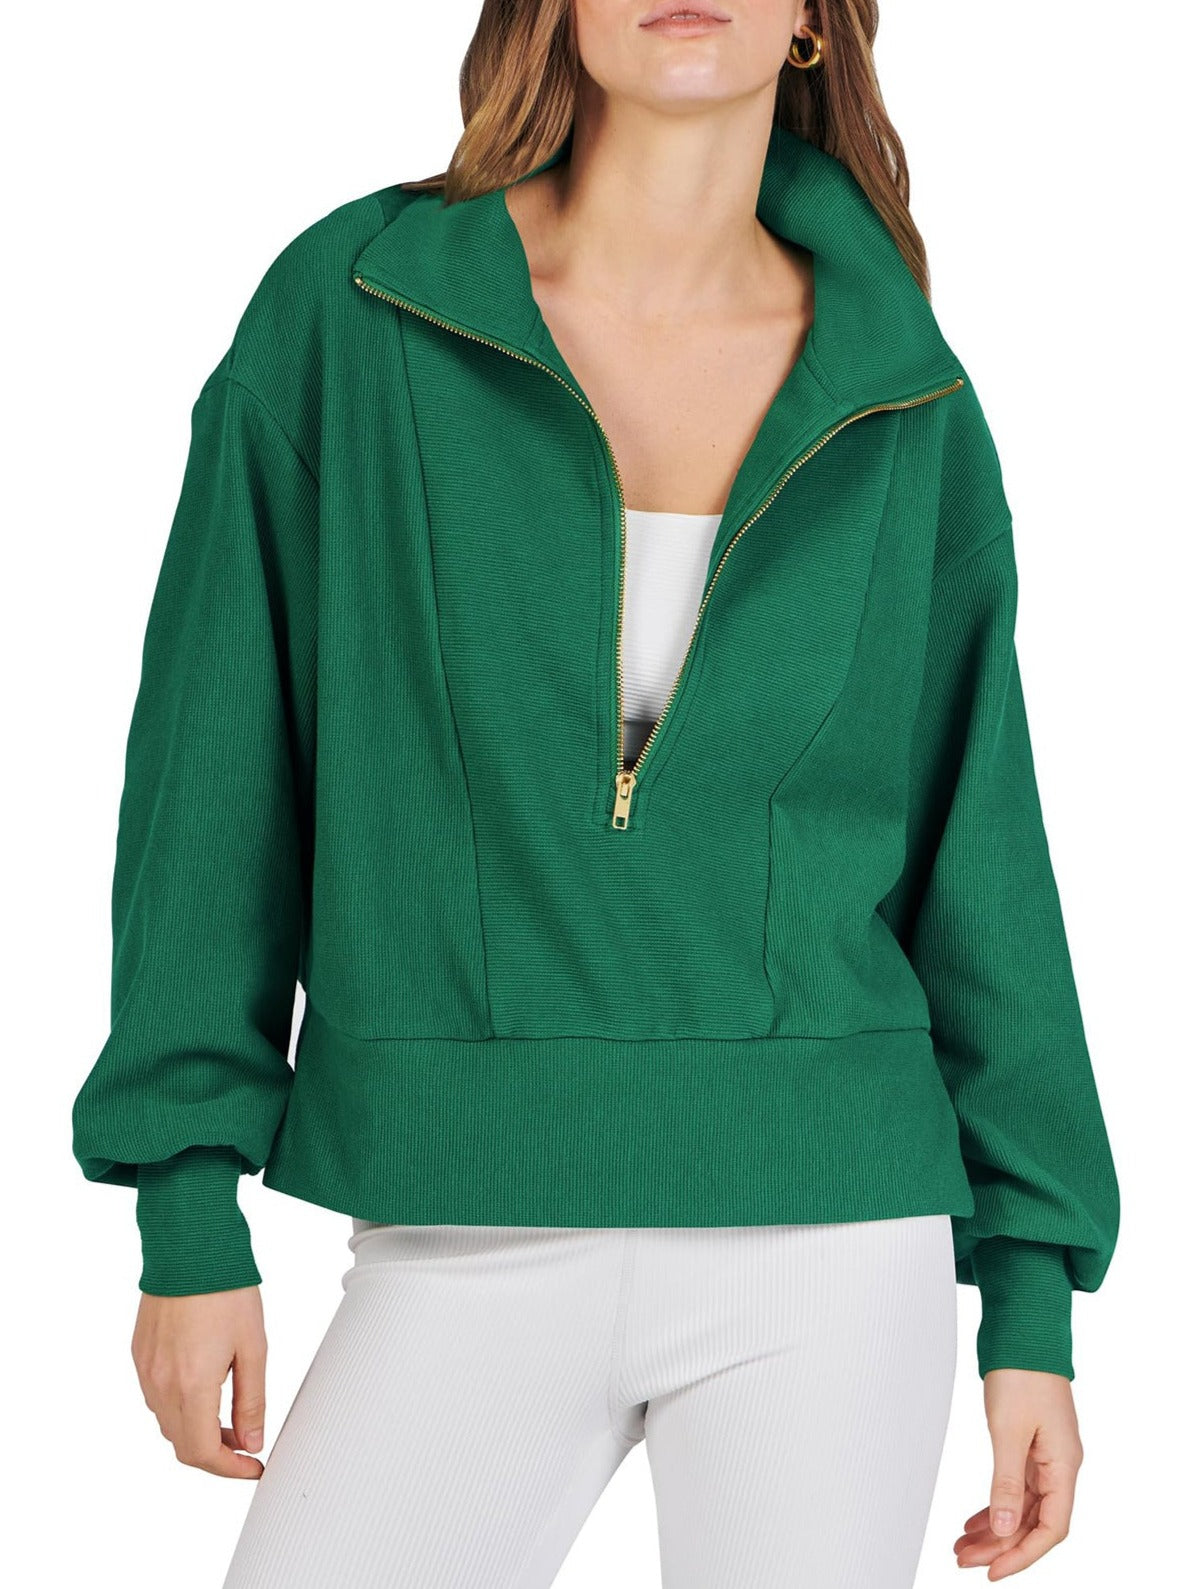 NTG Fad TOP green / S Half Zip Pullover Long Sleeve Sweatshirt